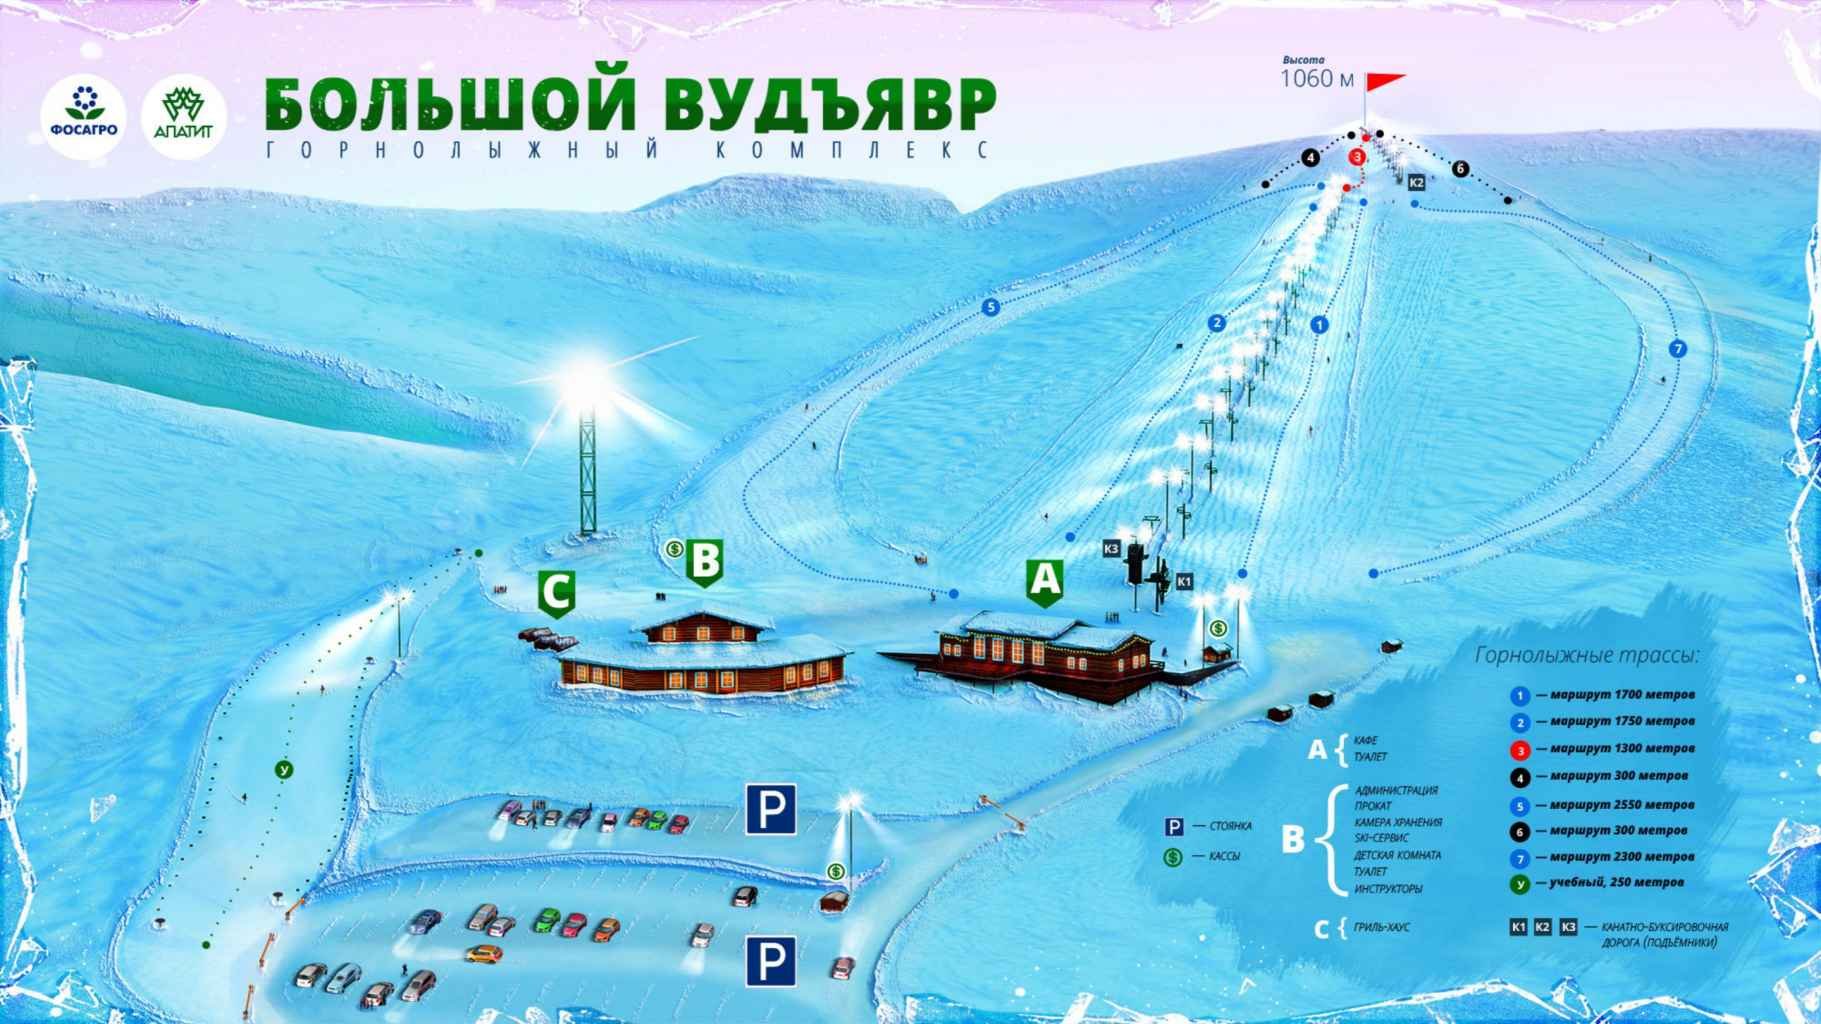 Кировск горнолыжный курорт вудъявр